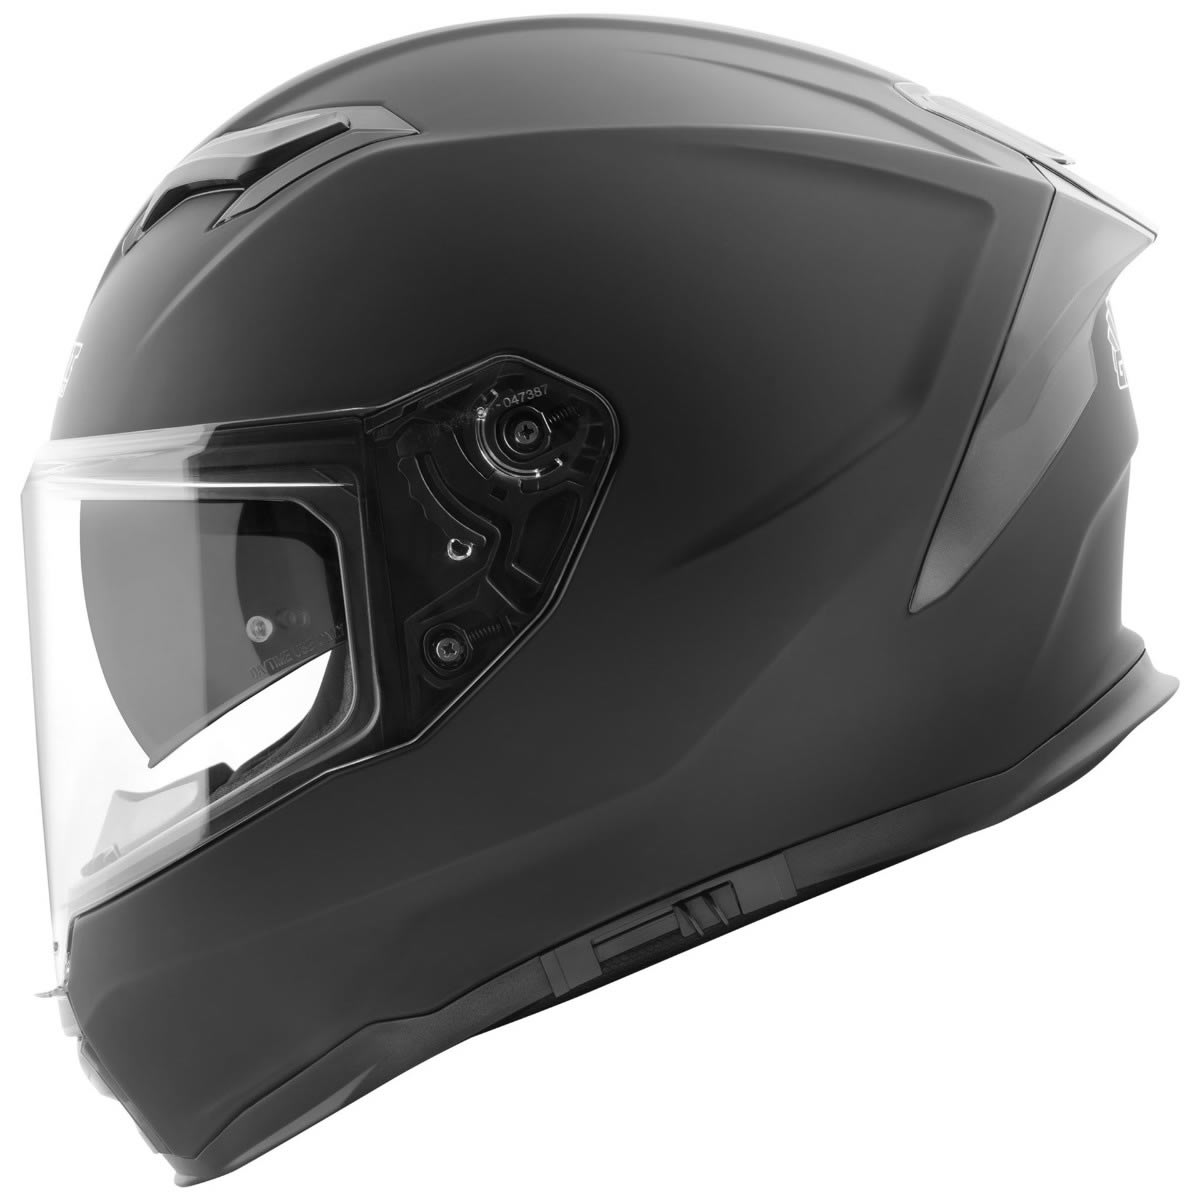 Germot GM 350 Helm, schwarz matt